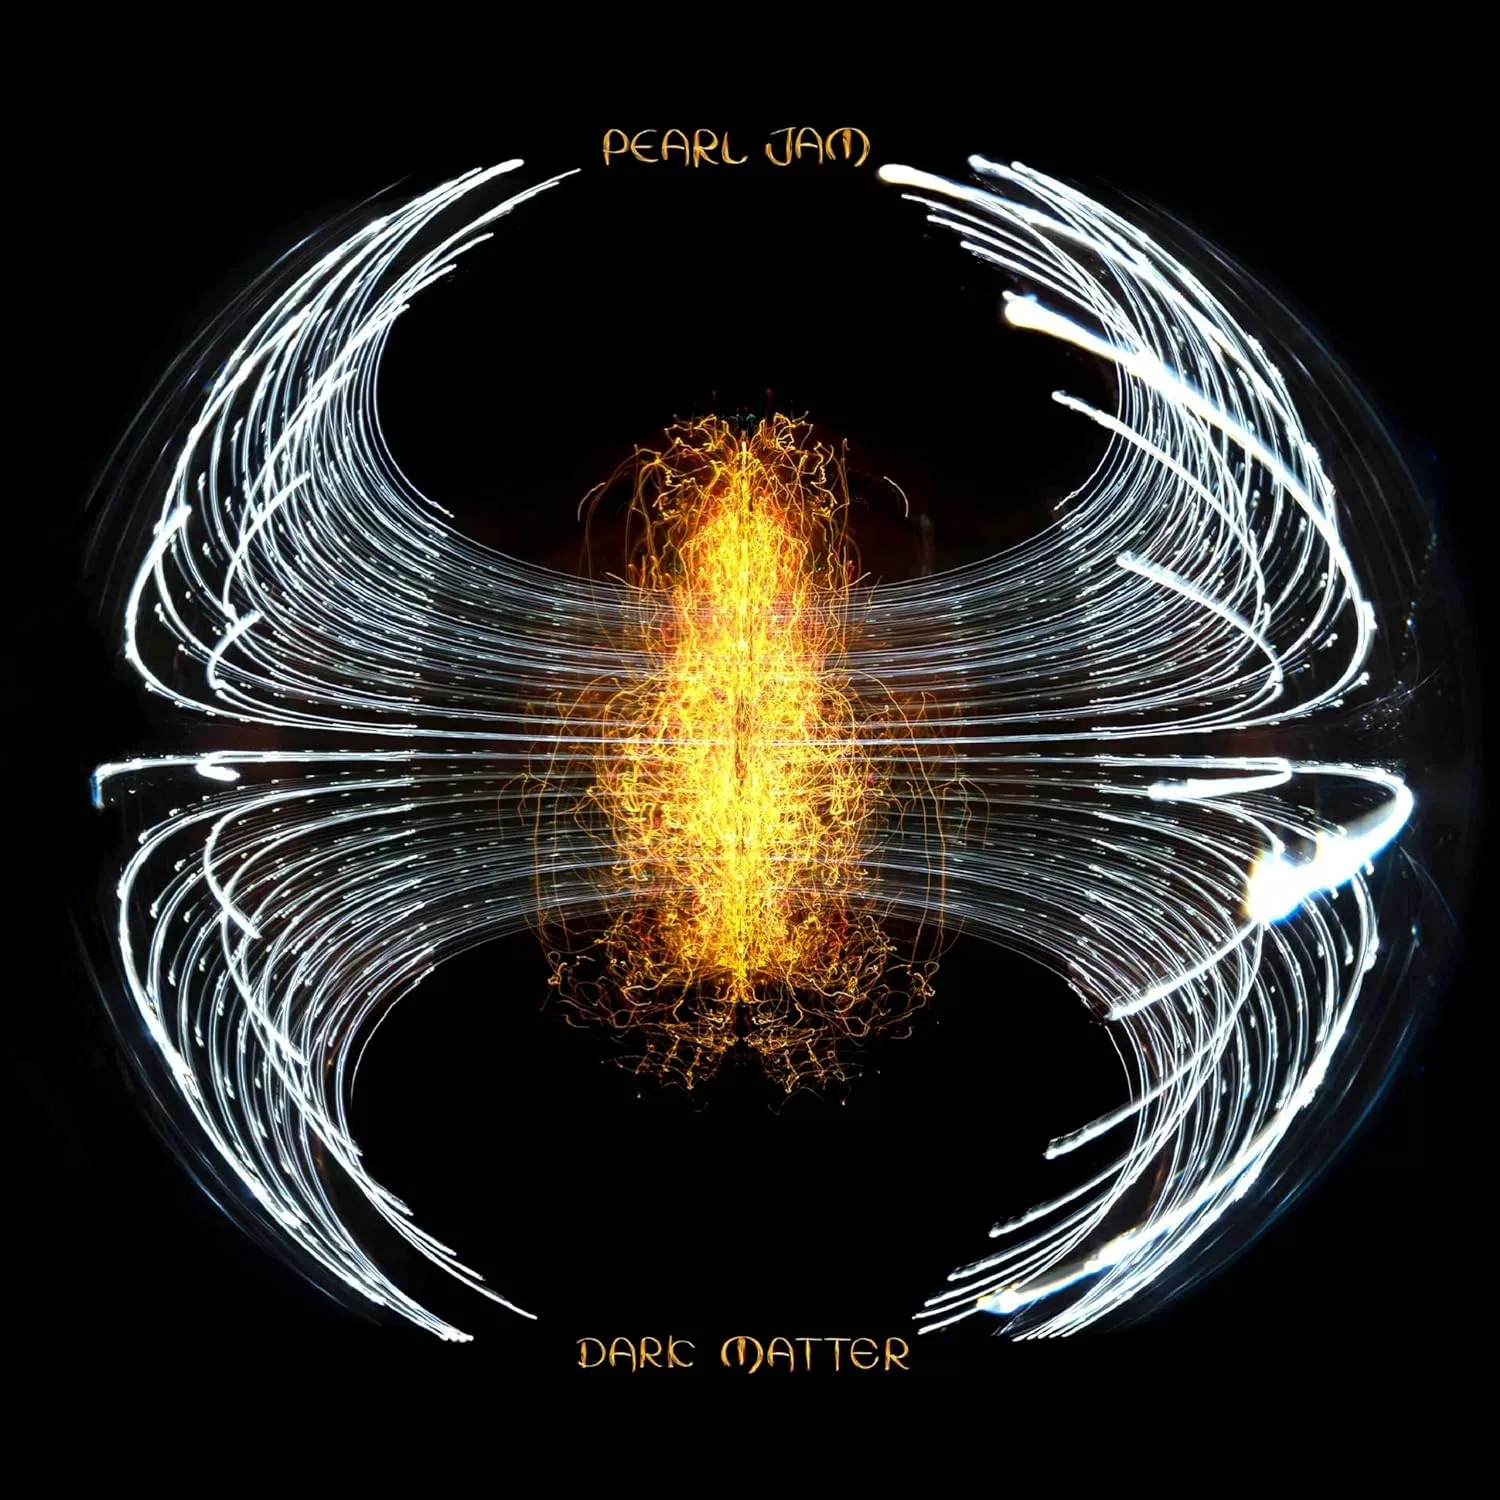 PEARL JAM - Dark Matter [DIGIPAK CD]